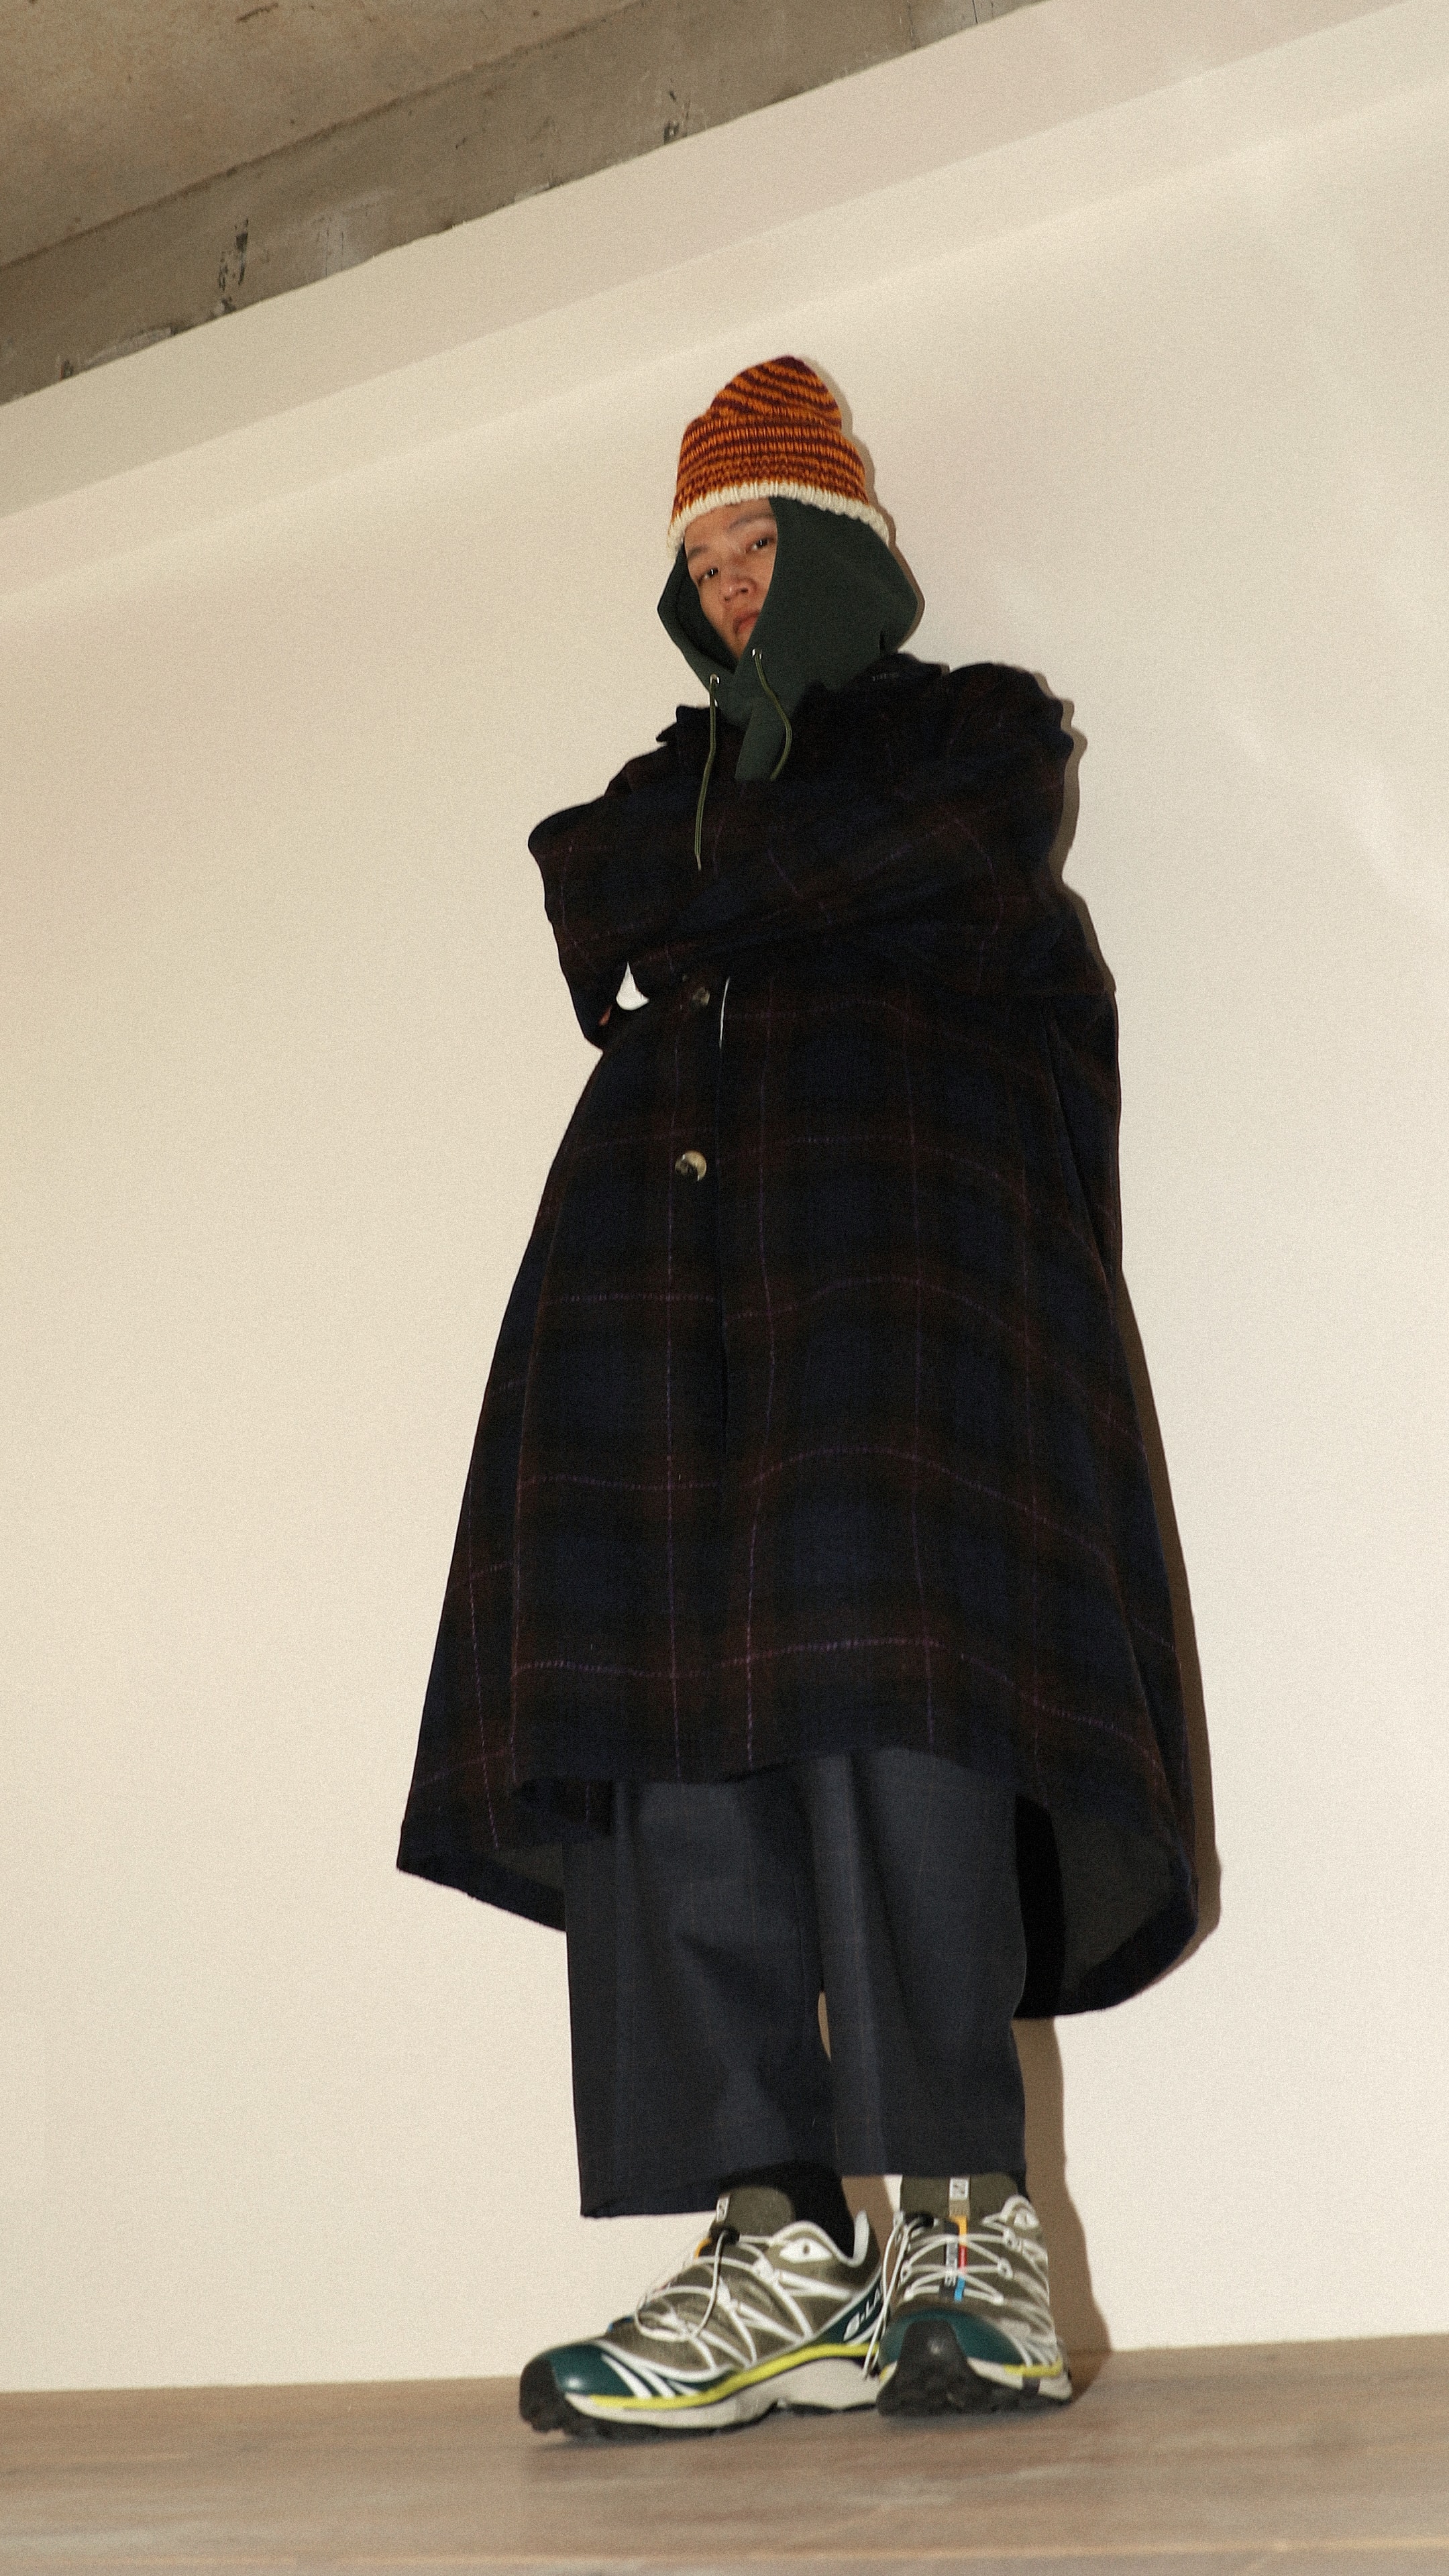 日本新銳品牌 Sillage 2019 冬季系列 Lookbook 正式發佈